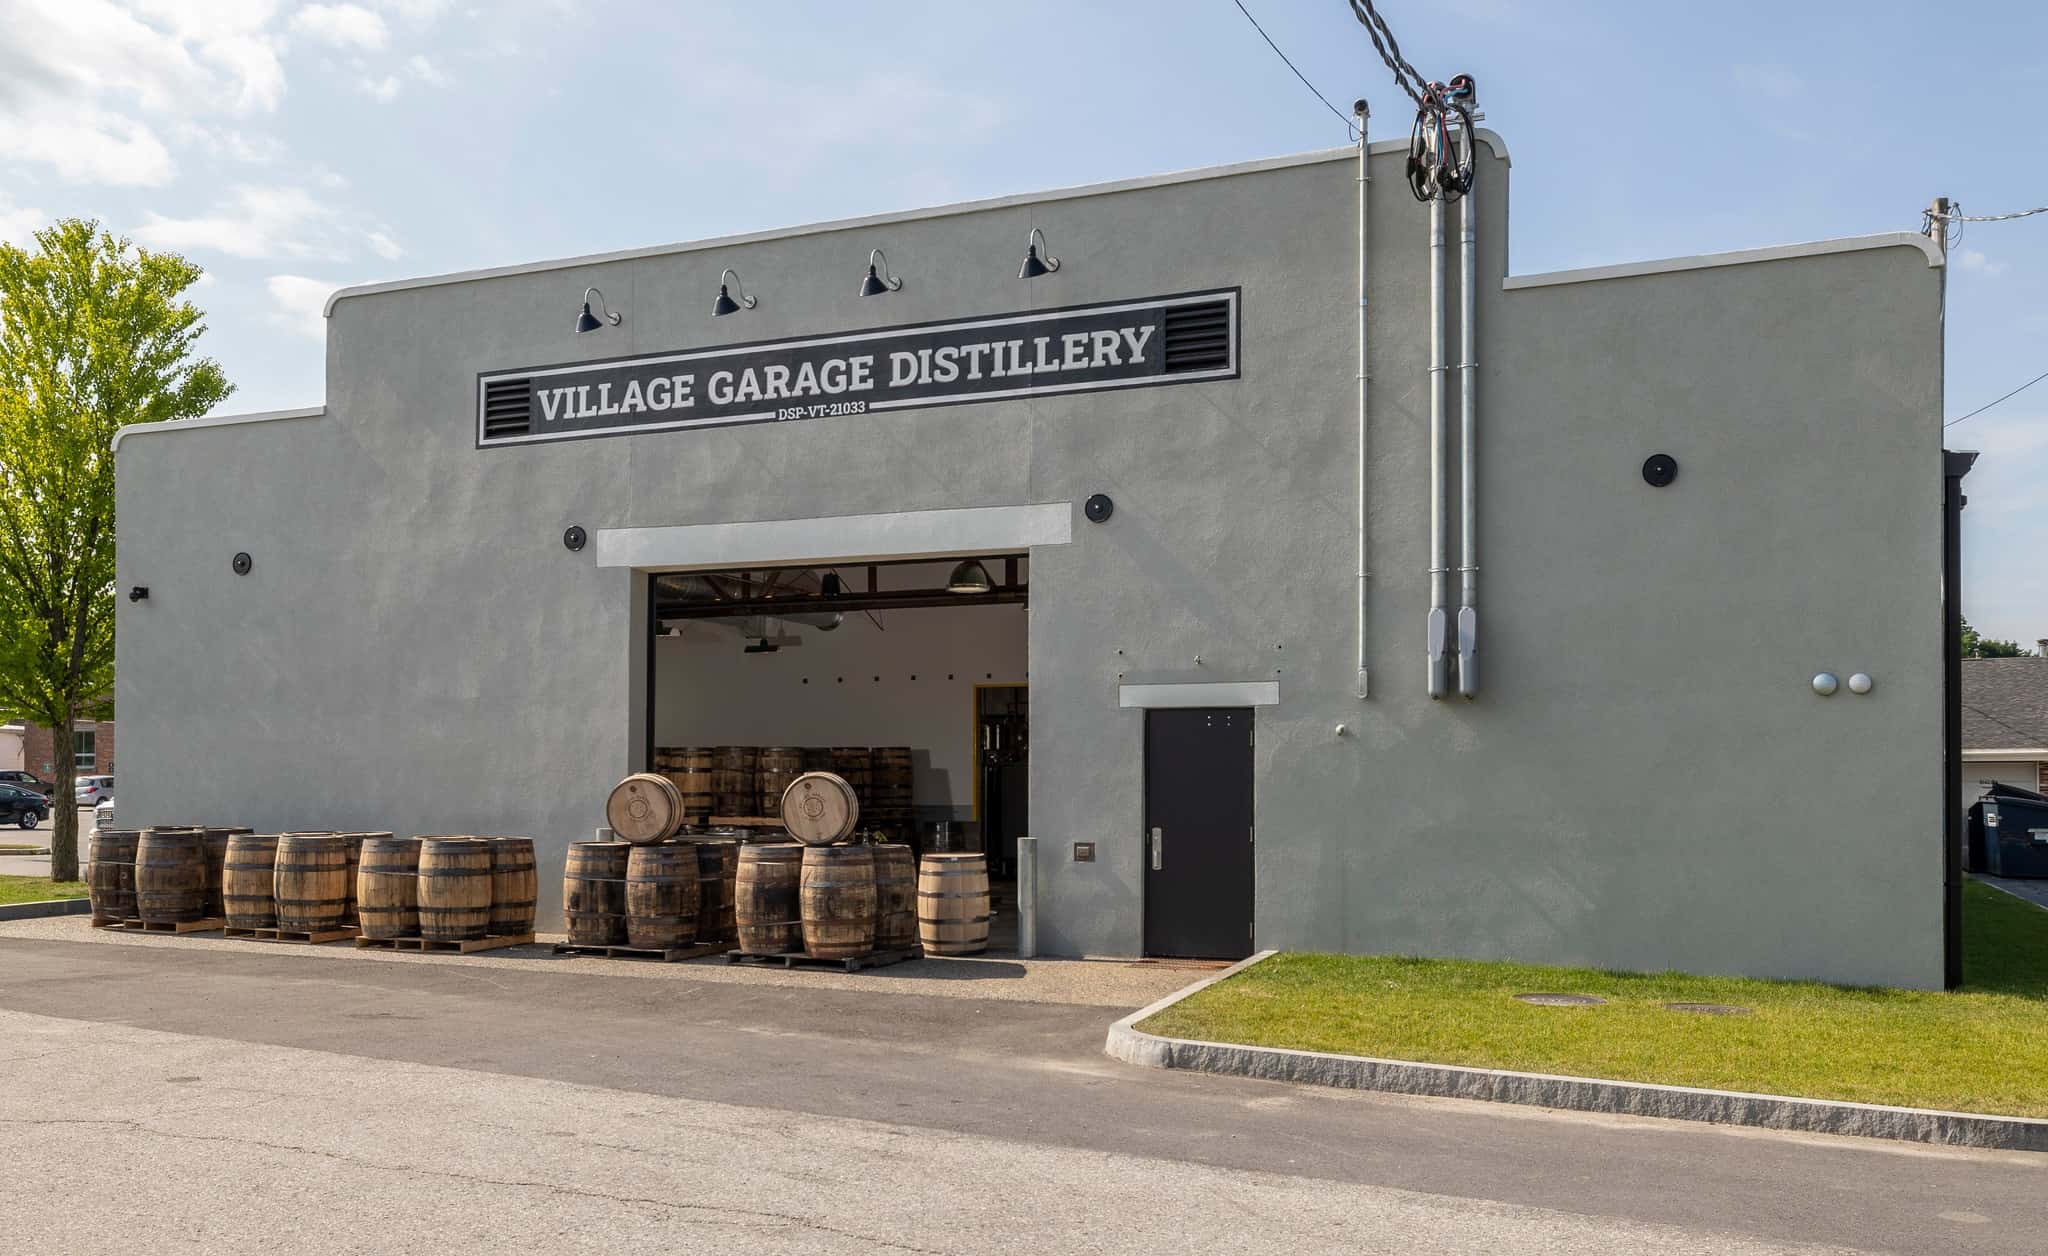 Village Garage Distillery Exterior Casks in Daylight